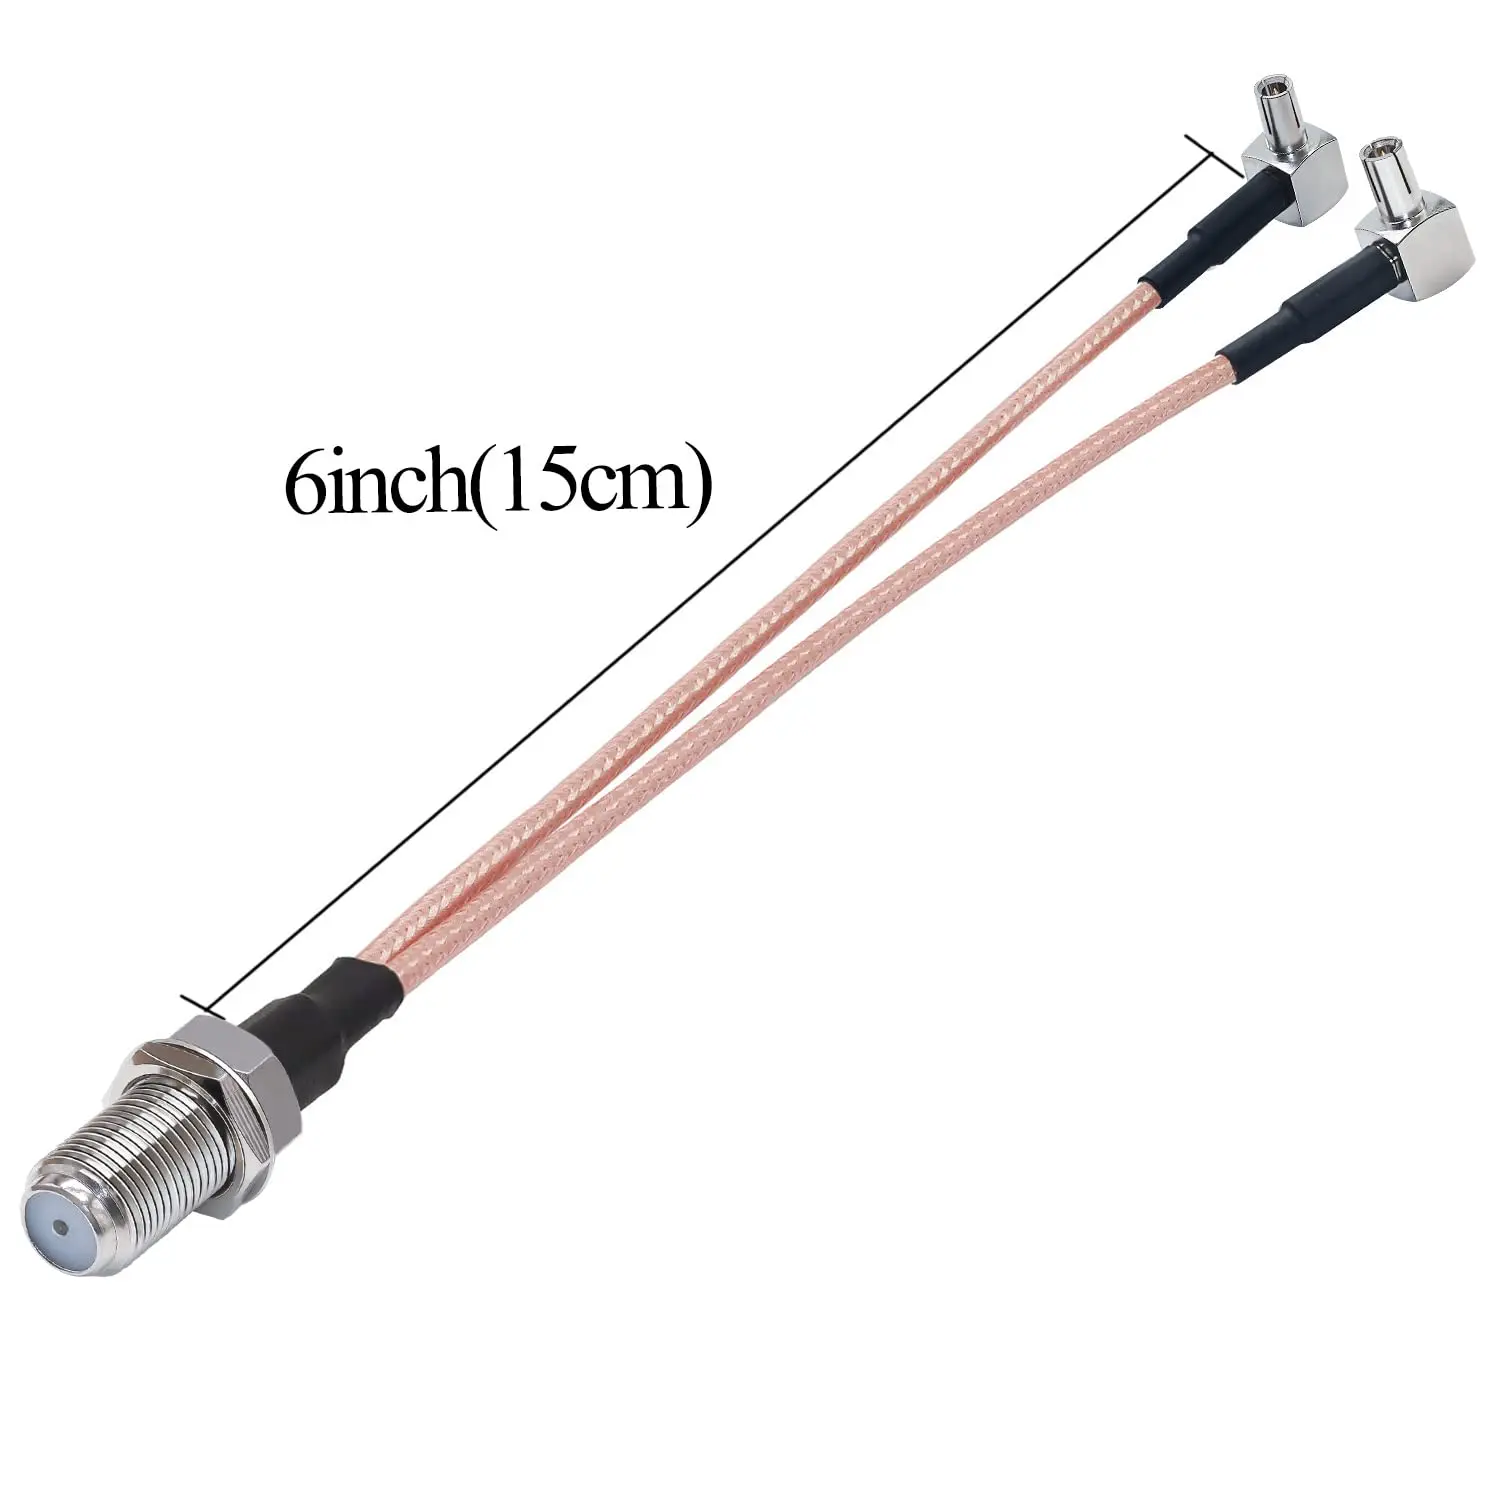 2 sztuki od F do TS9 kabel koncentryczny typu F żeńskiego do podwójnego męskiego kabel splittera kątowego RG316 6 cali (15cm) Y